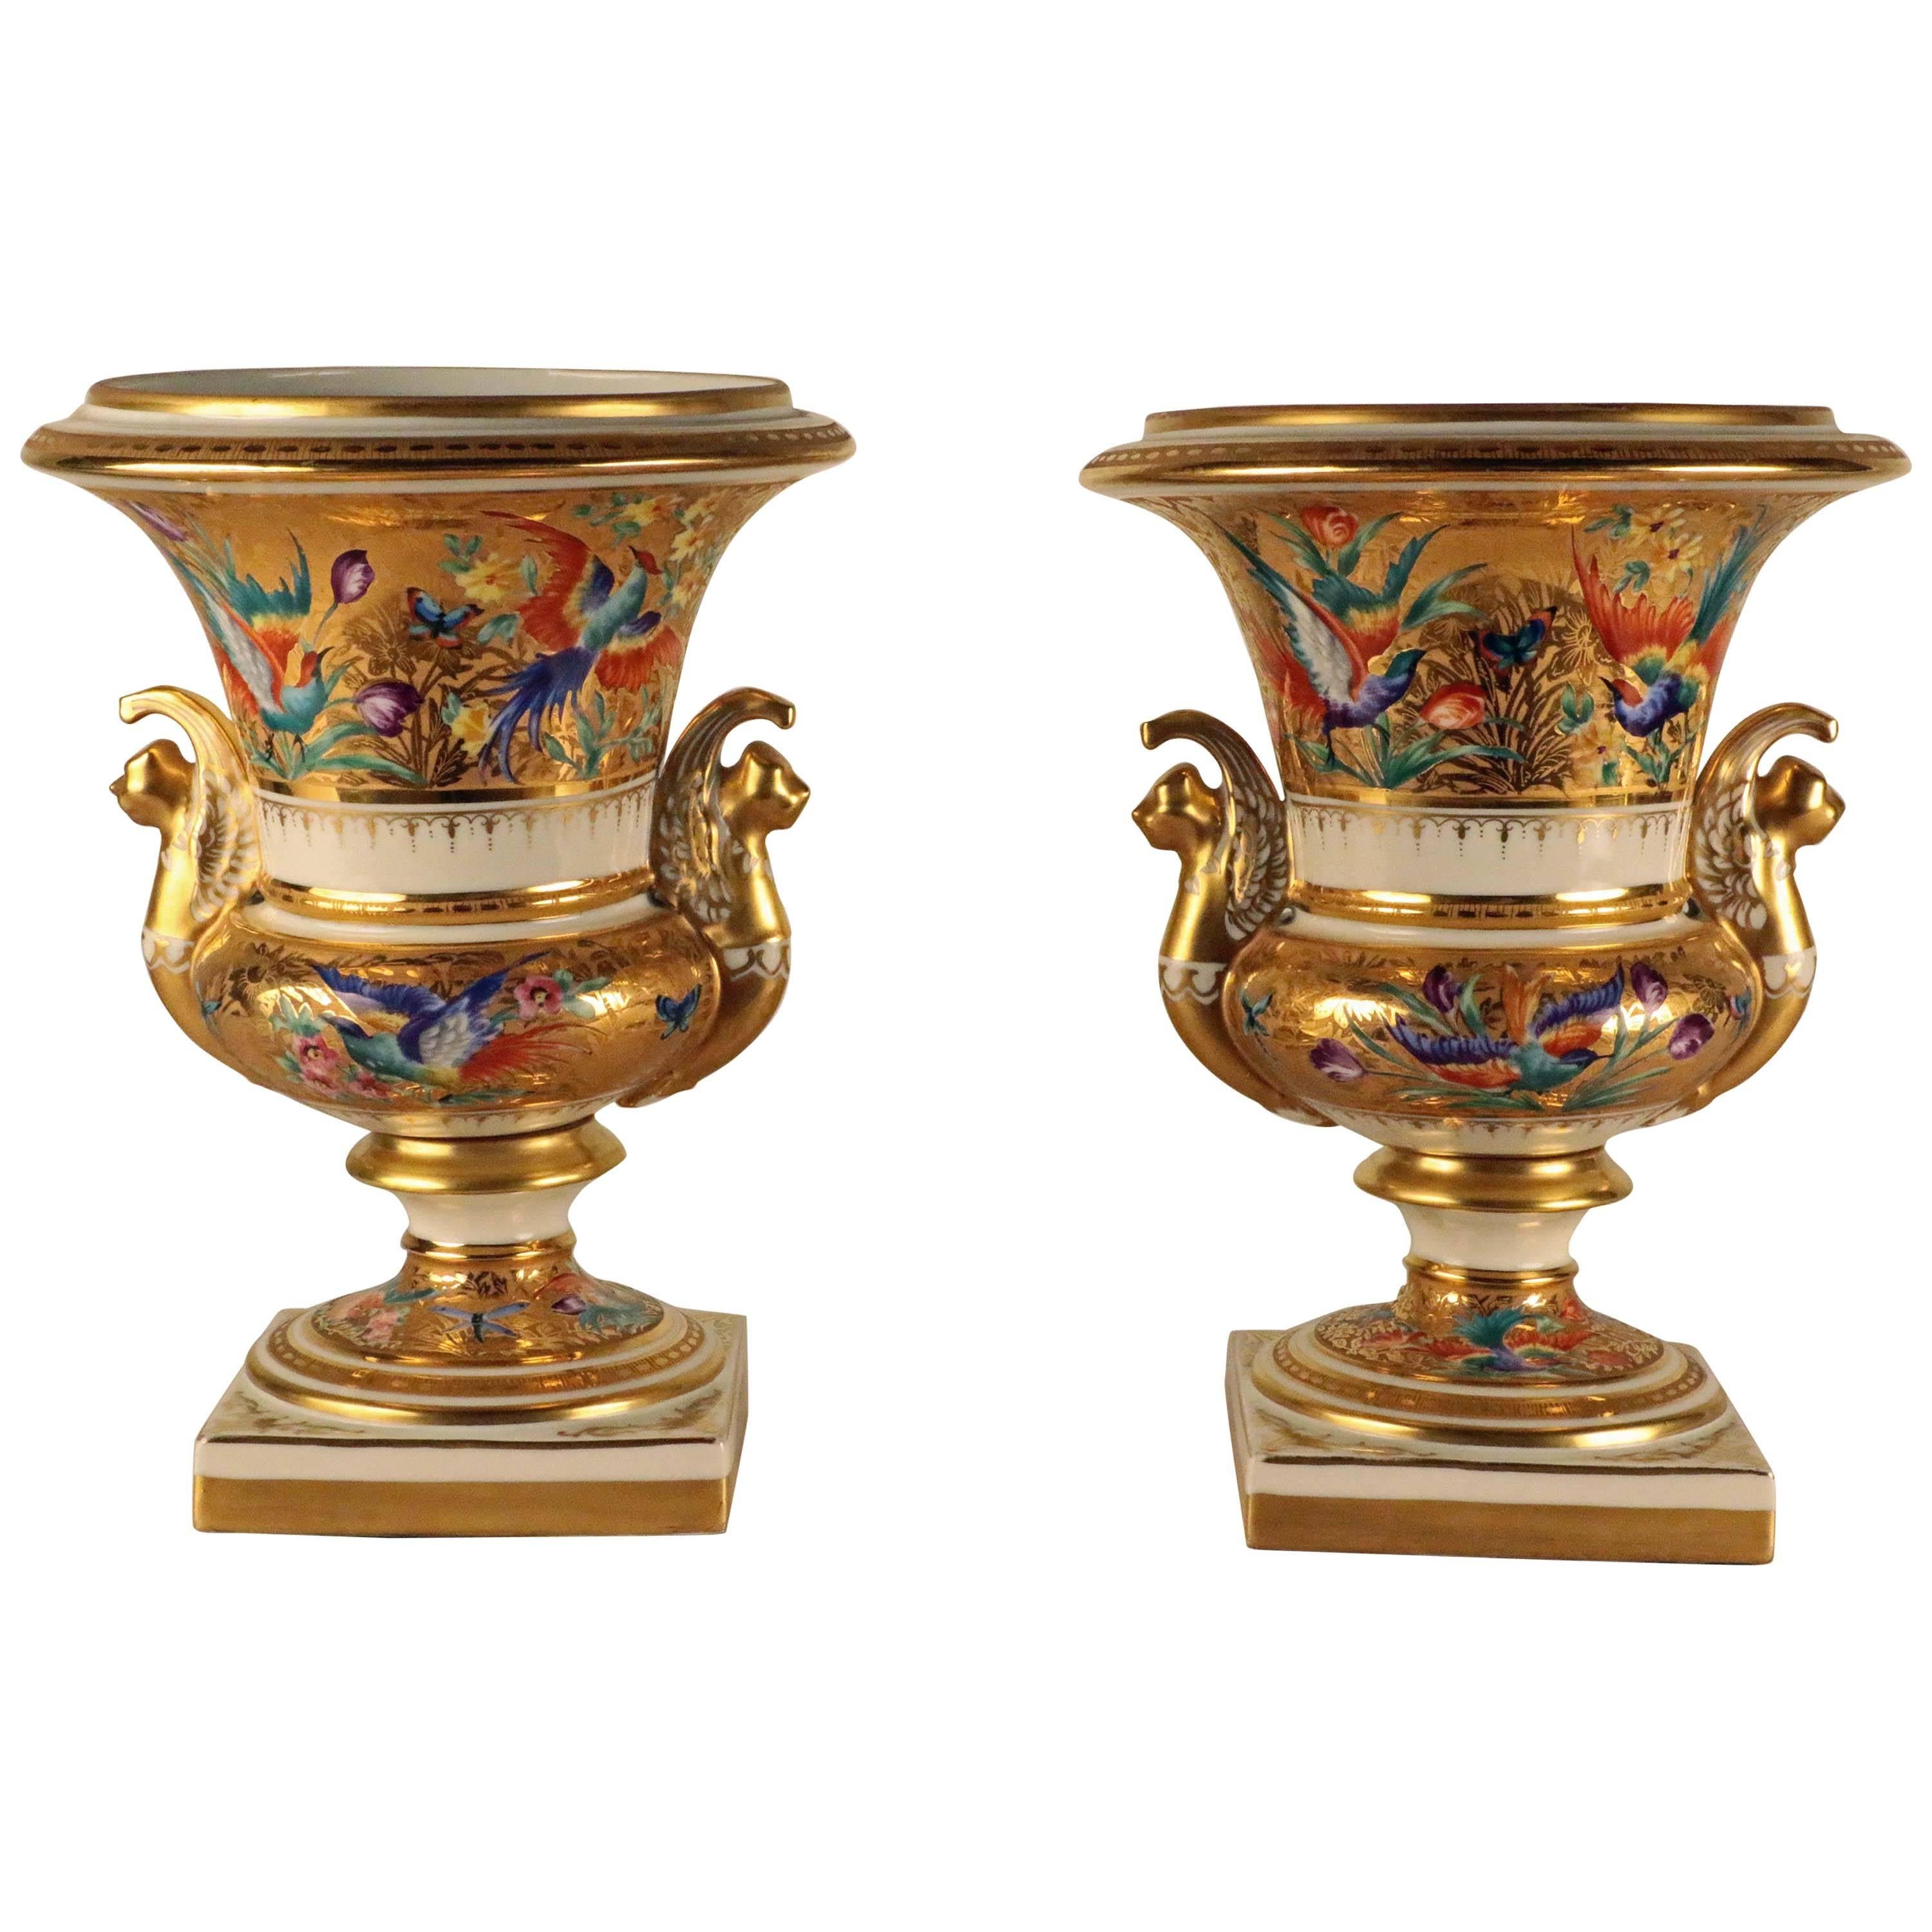 Paire d'urnes en porcelaine de style Empire de Paris, peintes et dorées